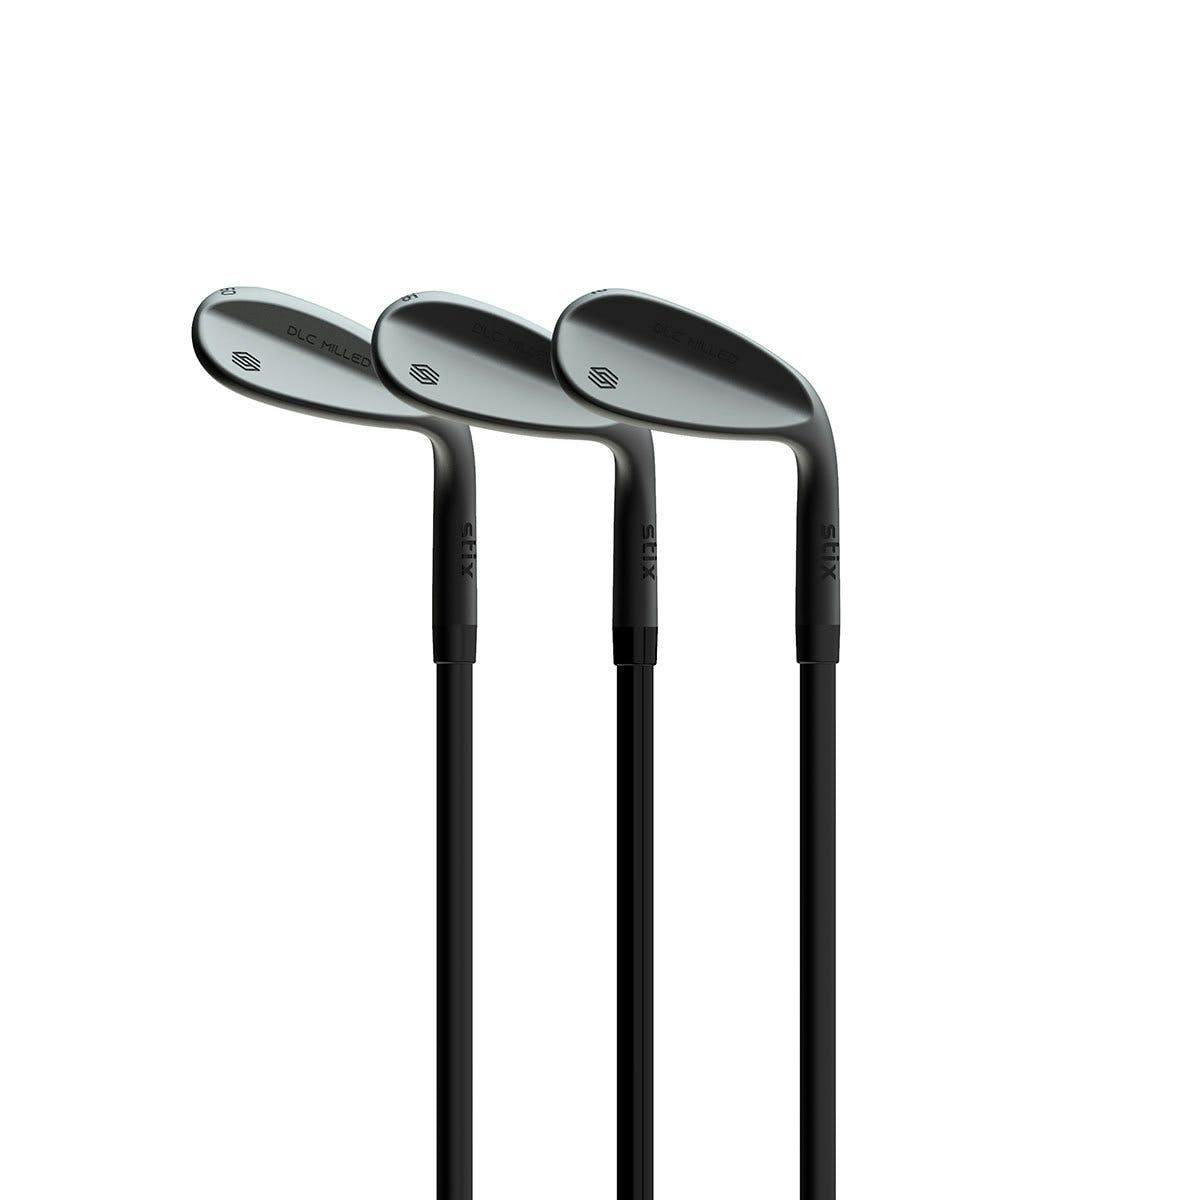 Stix Golf 3-Piece Wedge Set (52°, 56°, 60°) · Right handed · Graphite · Stiff · +0.5" (Your Height: 6'0" - 6'3")